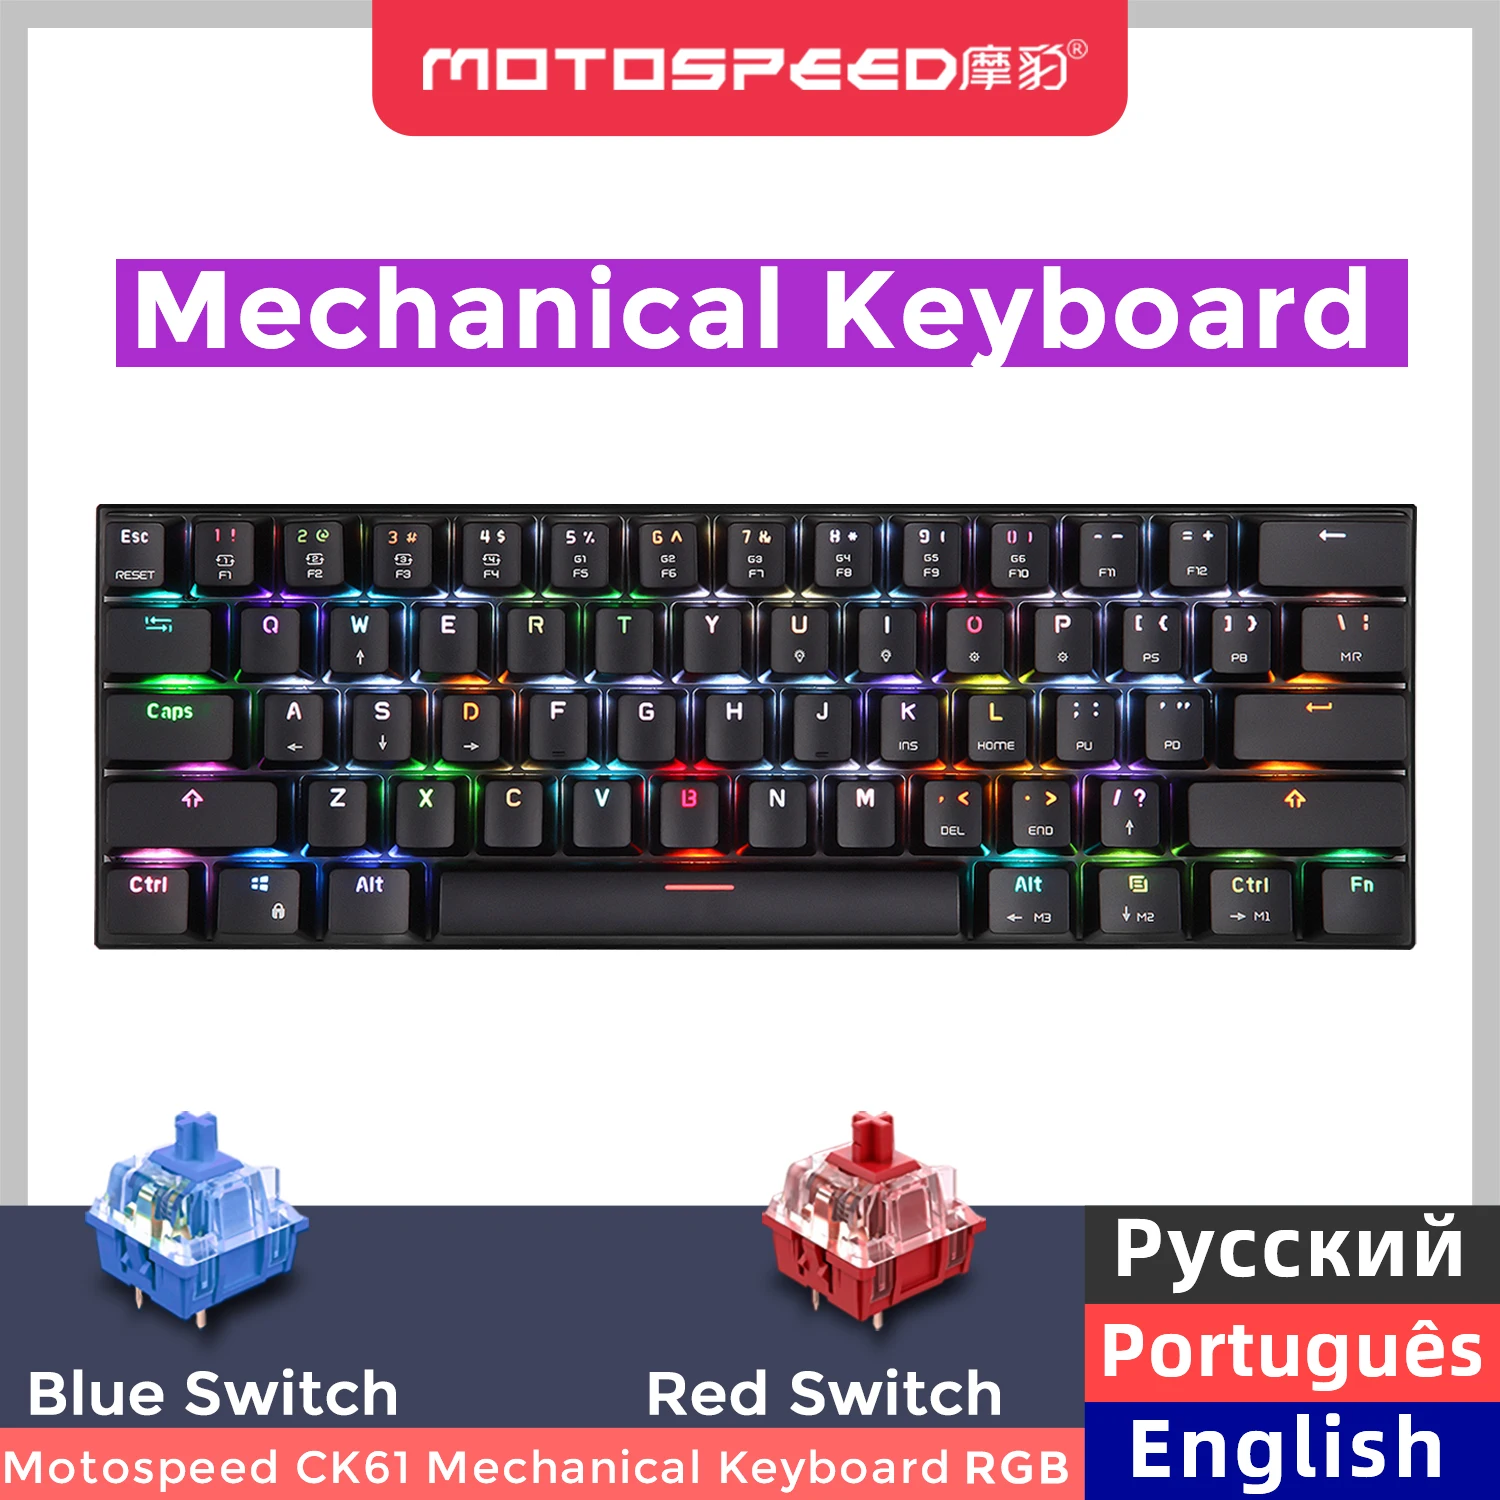 

Игровая механическая клавиатура Motospeed Mini, USB-клавиатура с RGB-подсветкой, 61 клавиша, с красным и синим переключателем для компьютера, настольного ПК, планшета